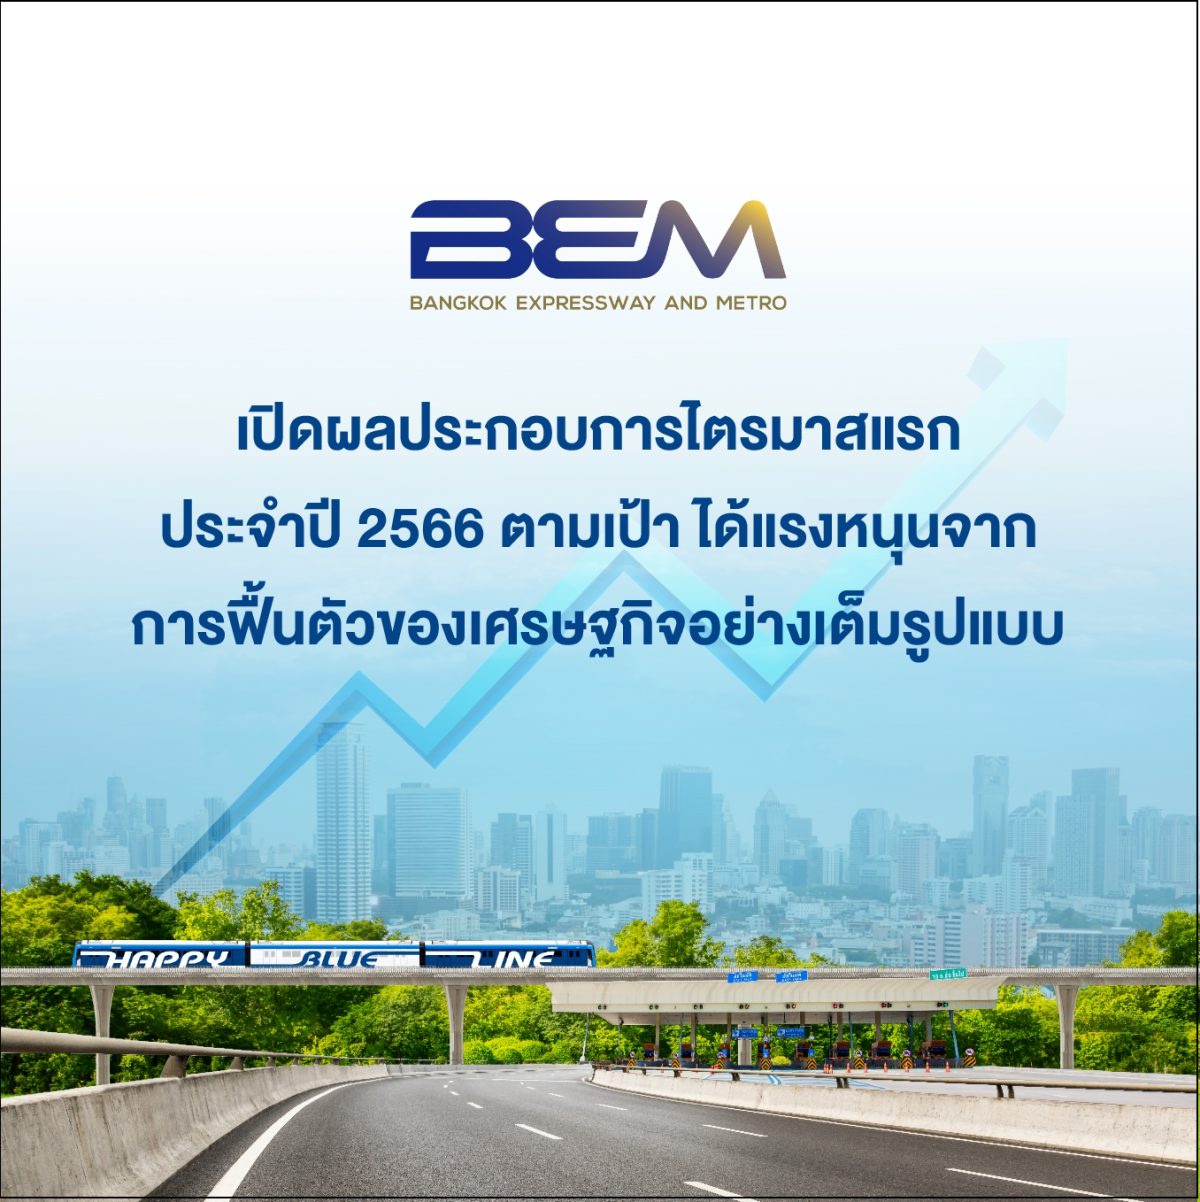 BEM เปิดผลประกอบการไตรมาสแรก ประจำปี 2566 ตามเป้า! ได้แรงหนุนจากการฟื้นตัวของเศรษฐกิจอย่างเต็มรูปแบบ